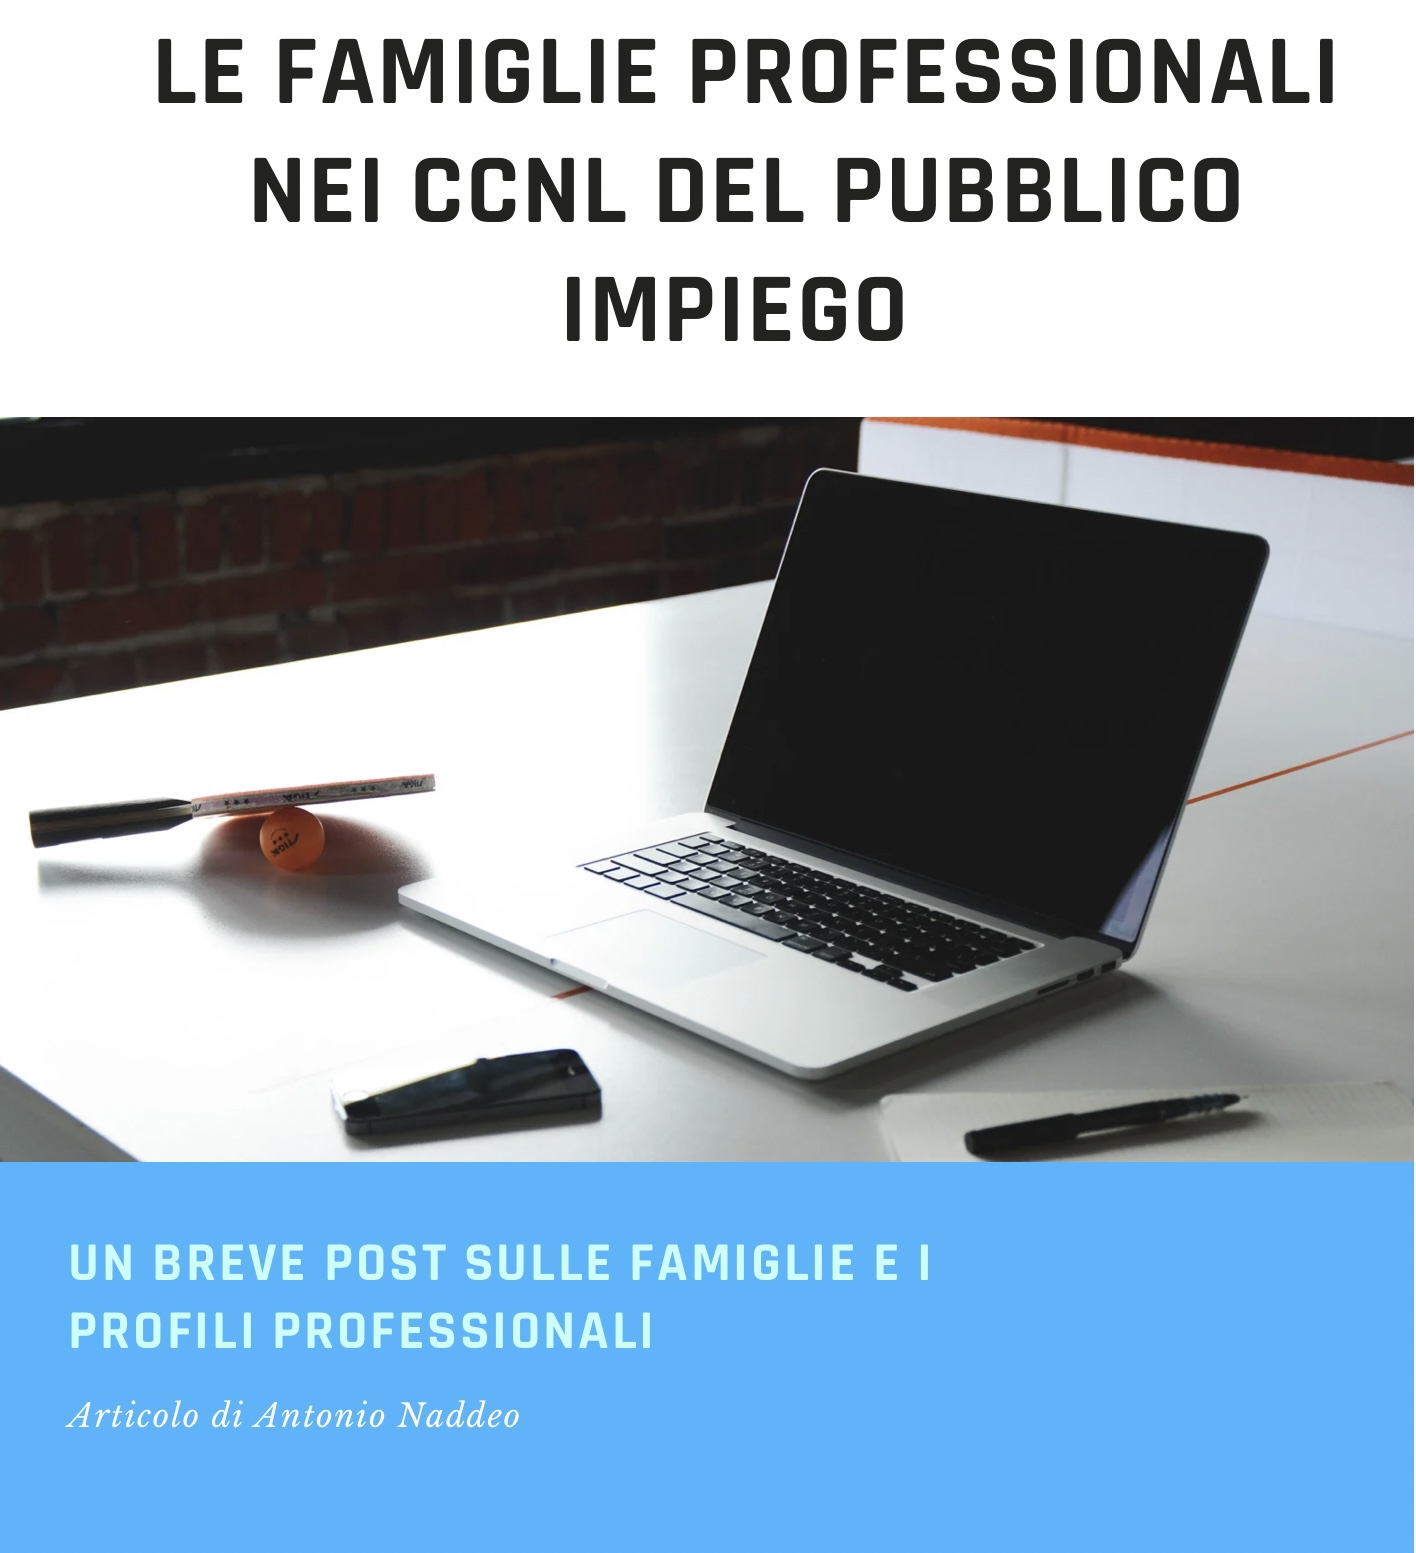 Le famiglie professionali nei  CCNL 2019-2021 del pubblico impiego (aggiornamento)